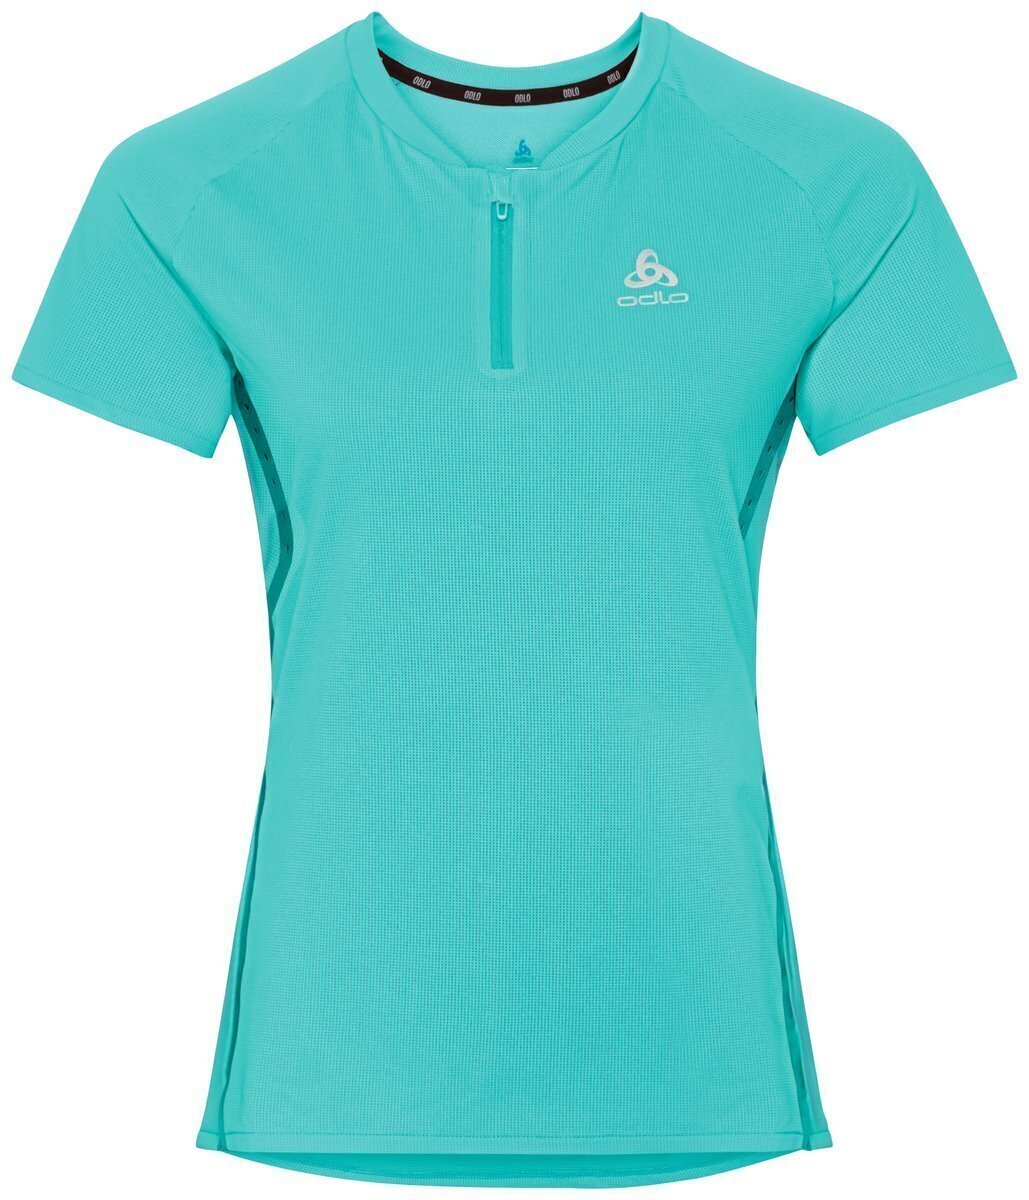 Bežecké tričko s krátkym rukávom
 Odlo Axalp Trail Half-Zip Jaded S Bežecké tričko s krátkym rukávom